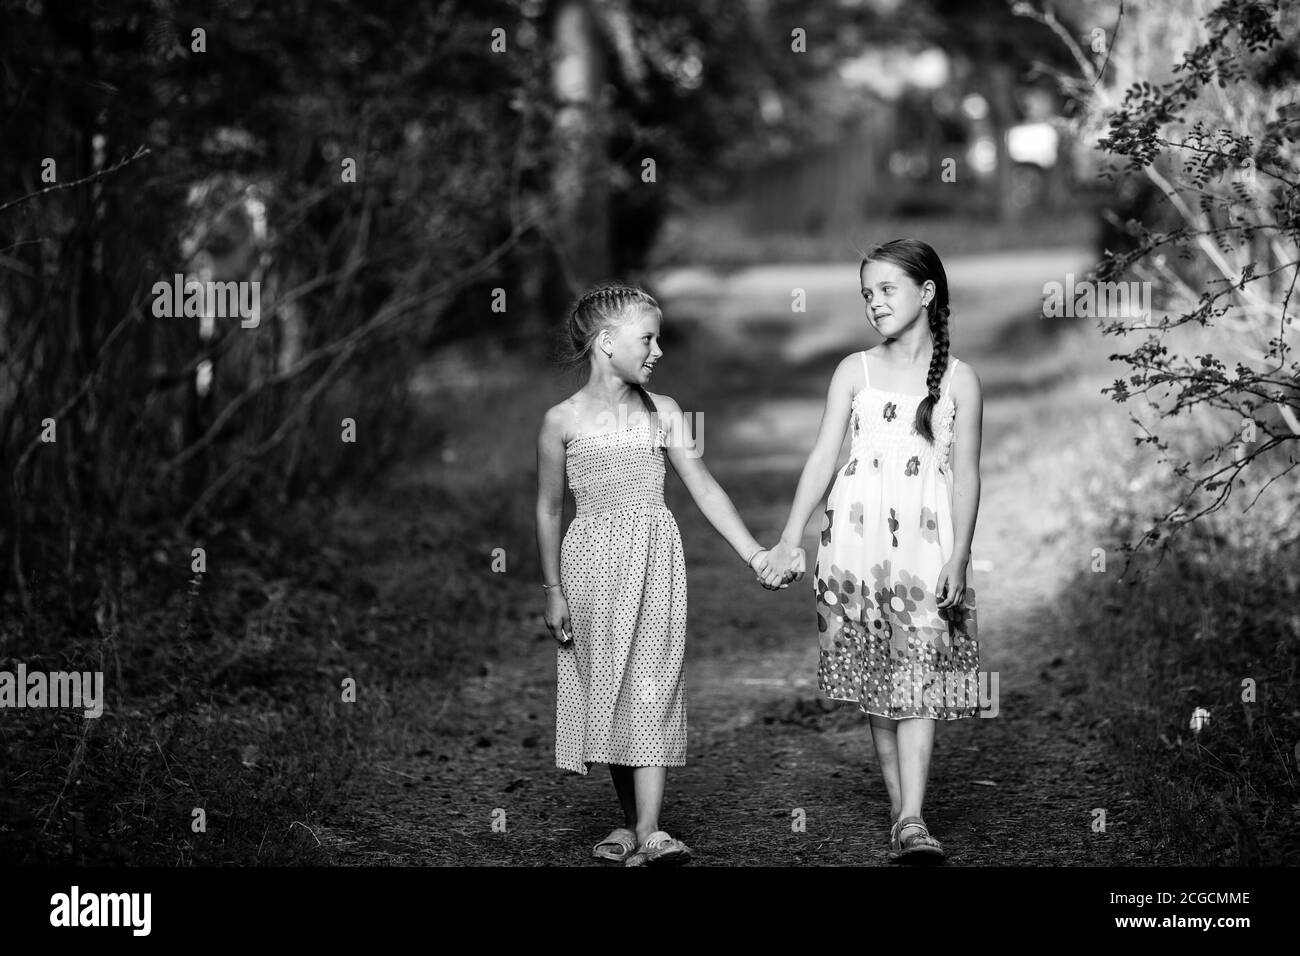 Deux filles de dix ans marchent dans la ruelle. Photo en noir et blanc. Banque D'Images